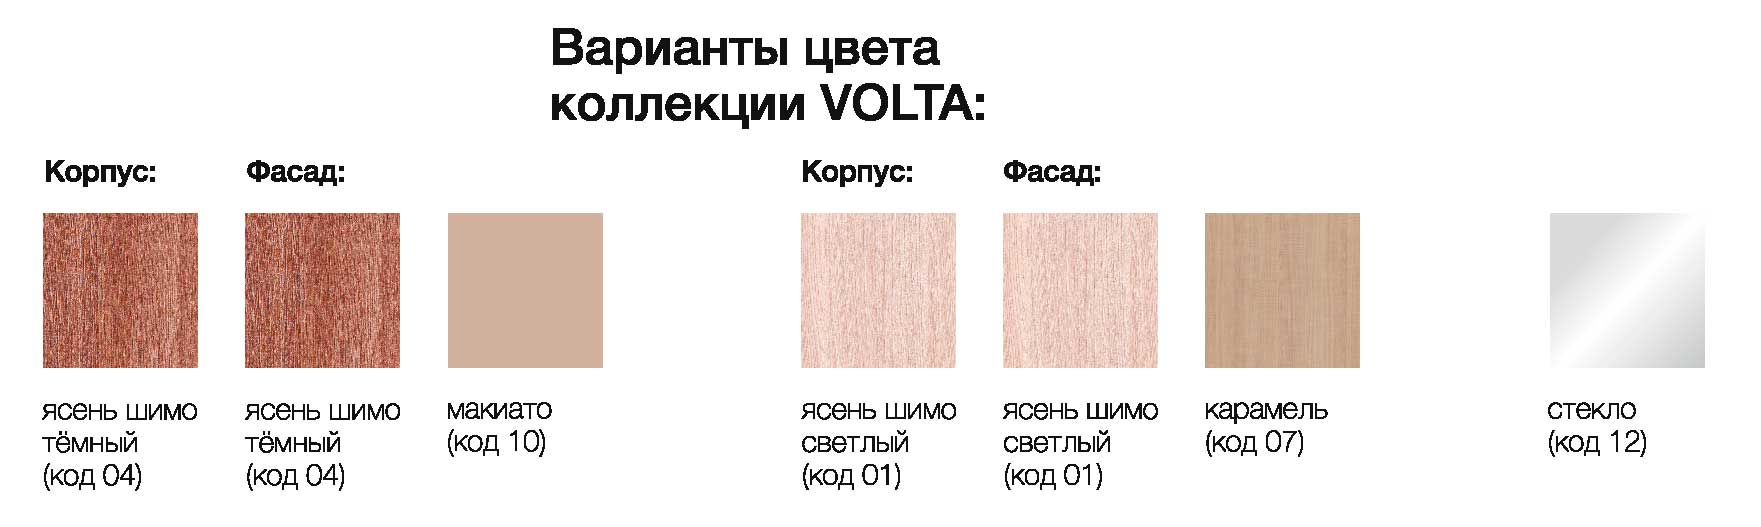 Варианты цвета коллекции VOLTA